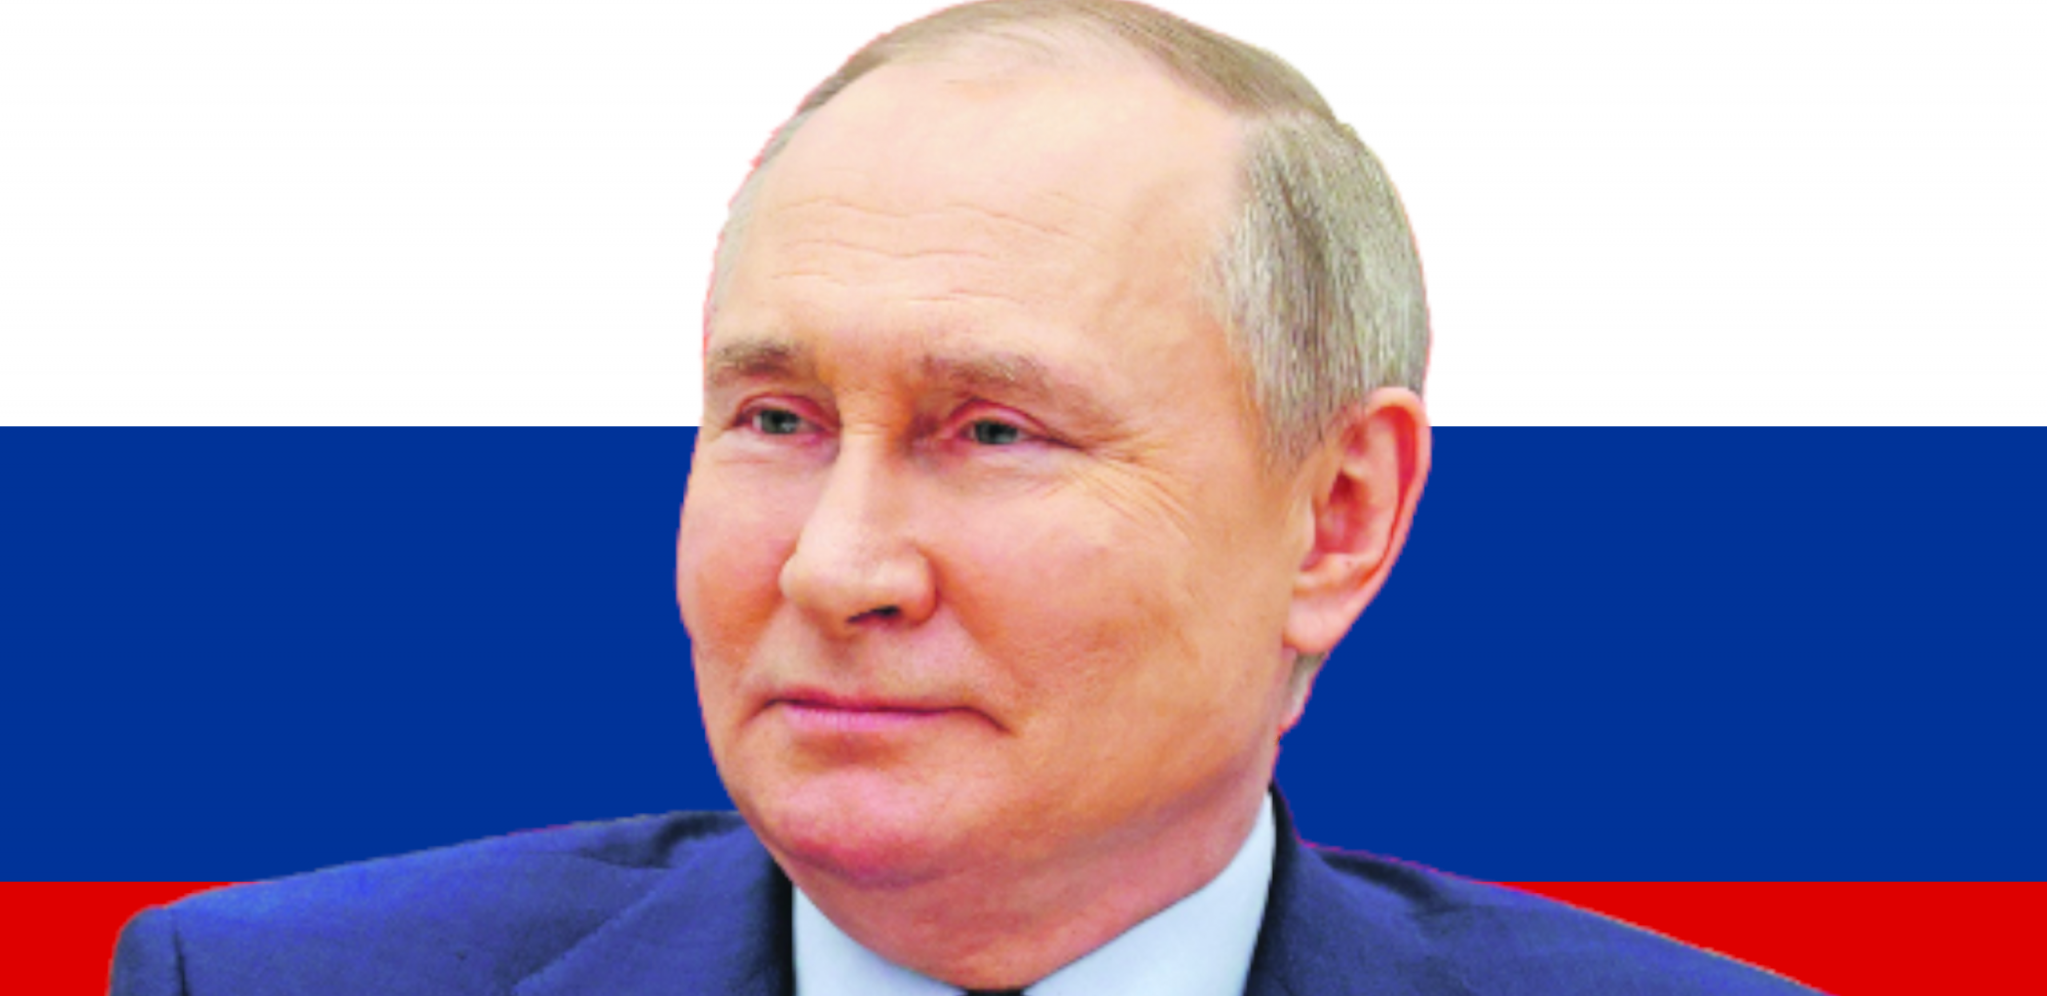 CENA ĆE DA "ODLETI U NEBO" Posle Putinovog govora svetsko tržište se uzburkalo